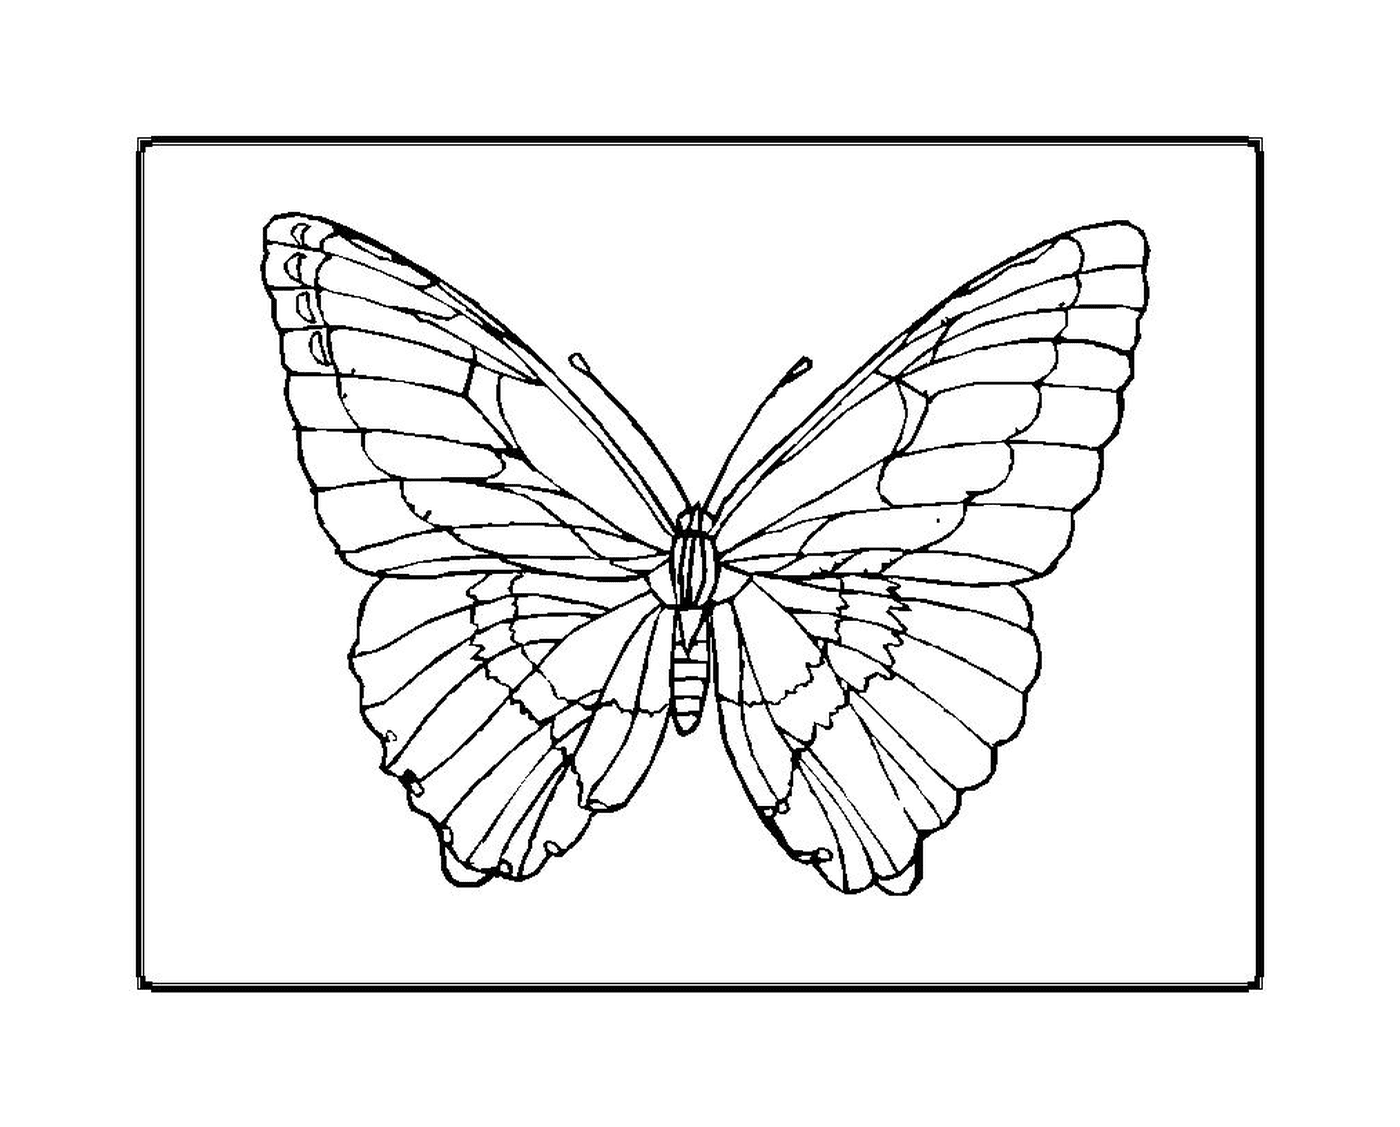  farfalla tremolante ed elegante 